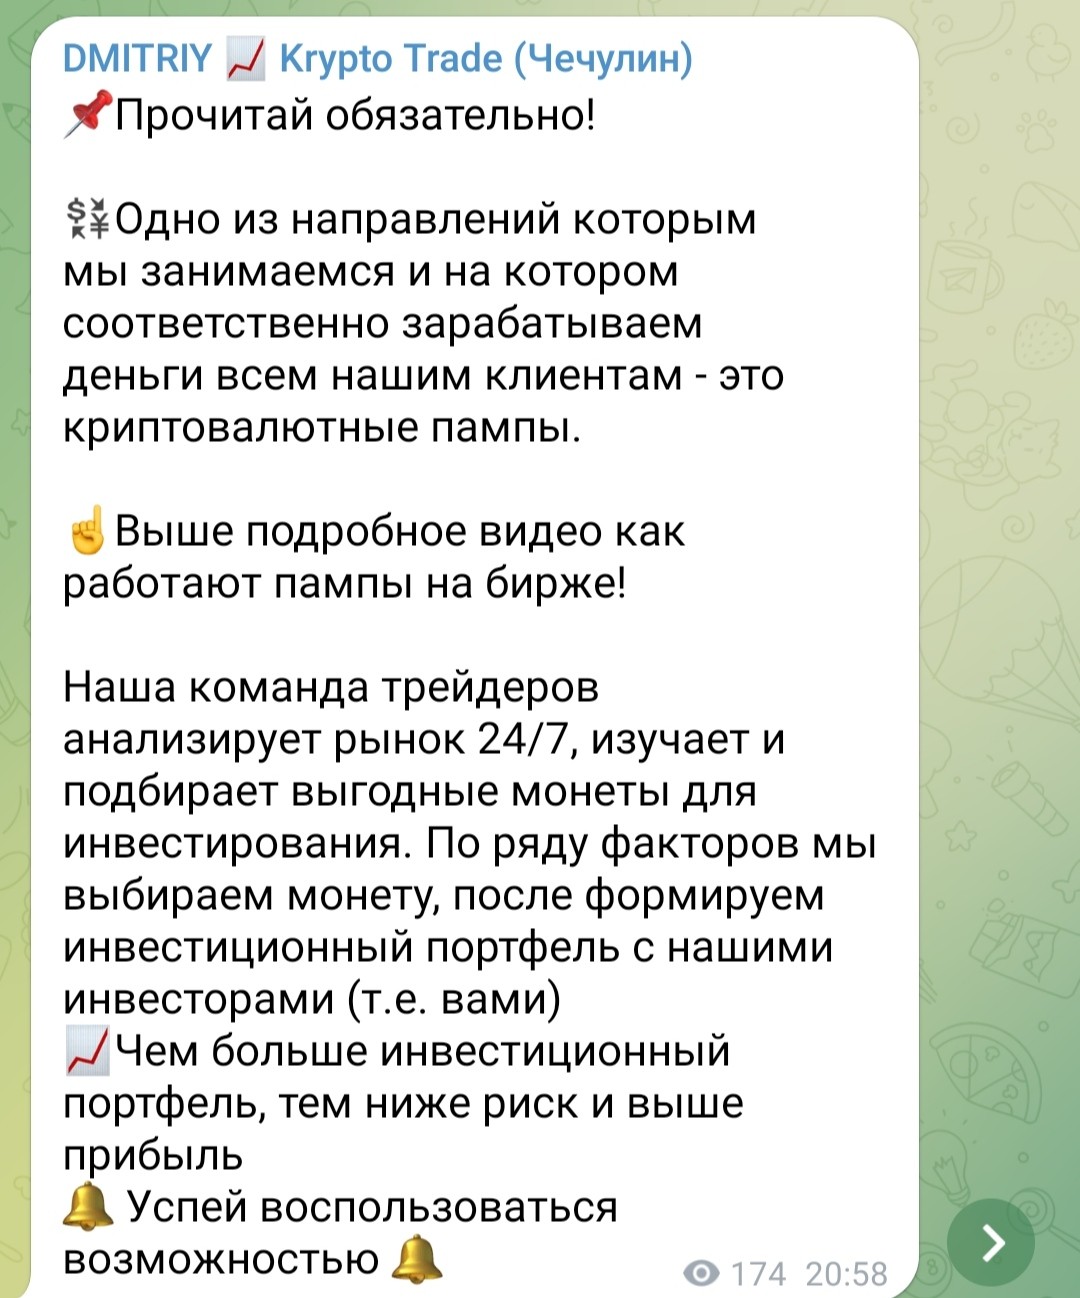 Дмитрий Крипто трейд телеграм